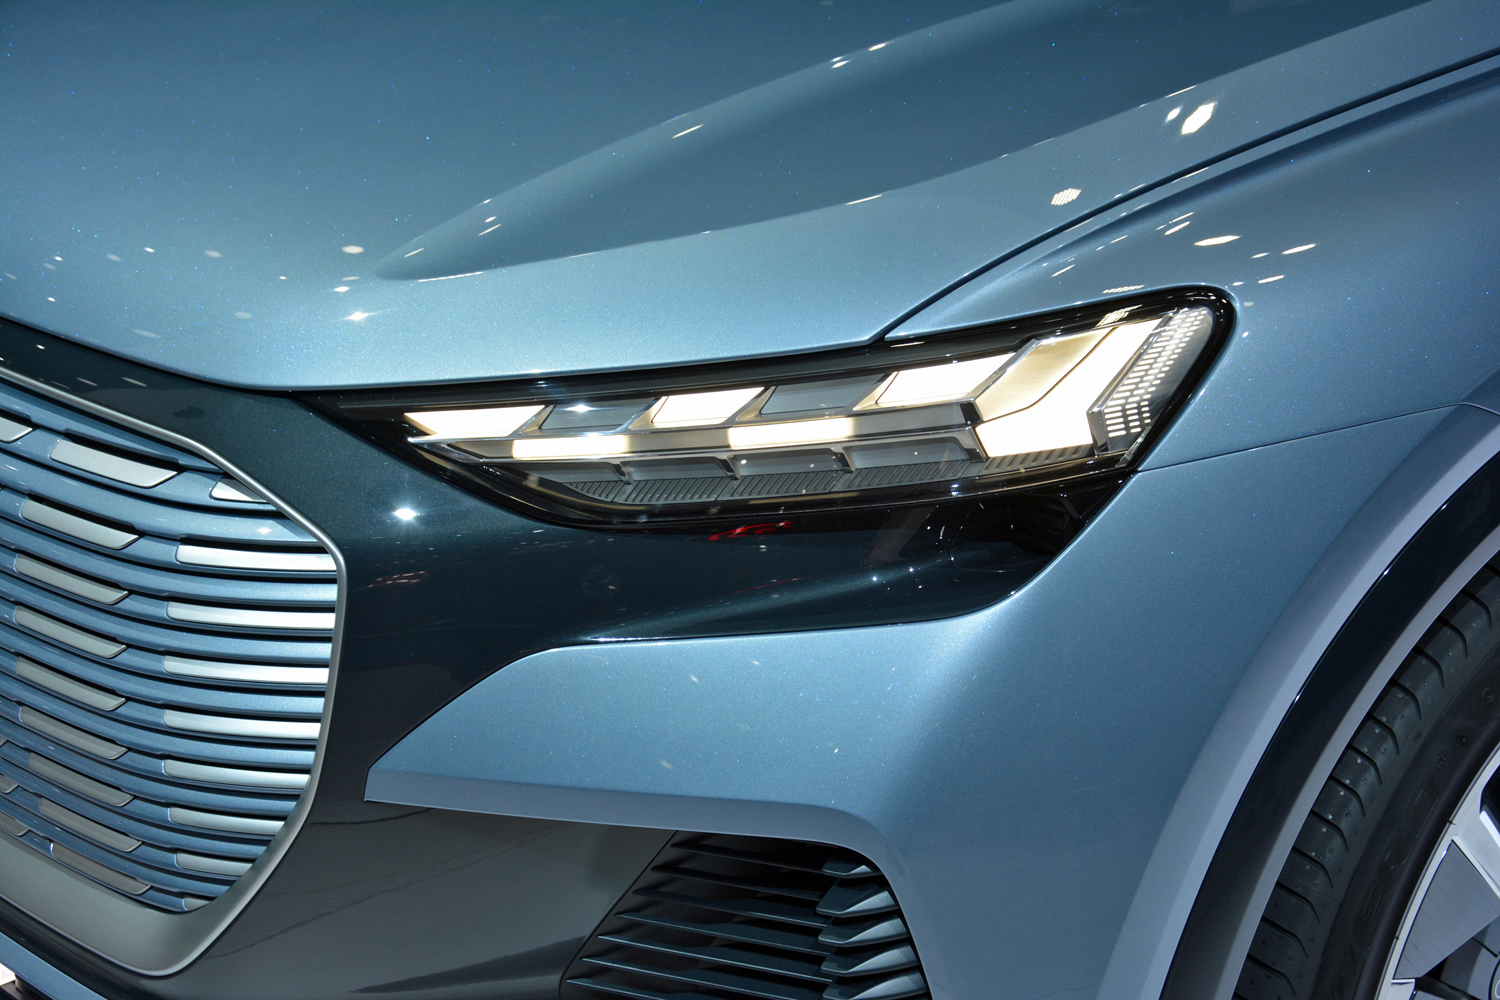 2019 Audi Q4 E-Tron concept